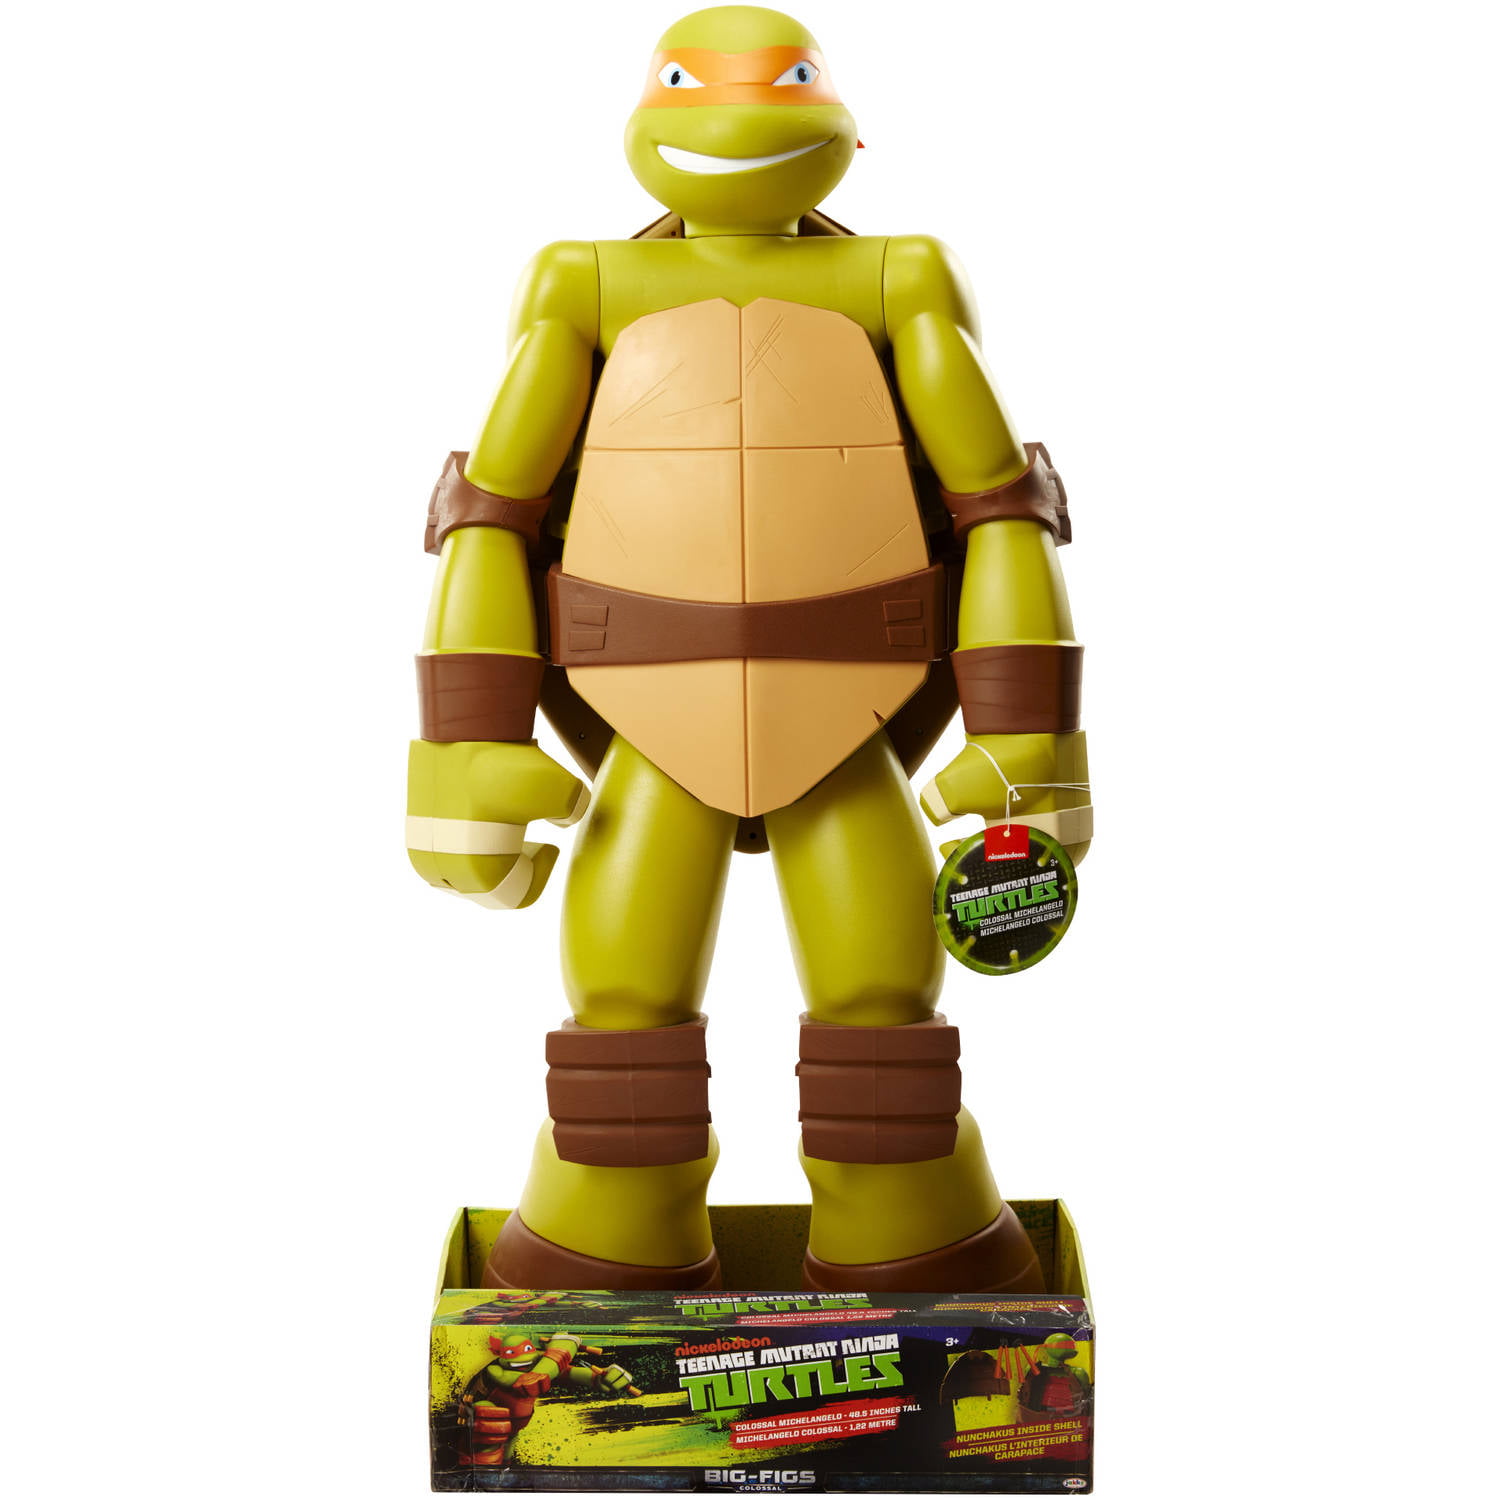 tall ninja turtle toy